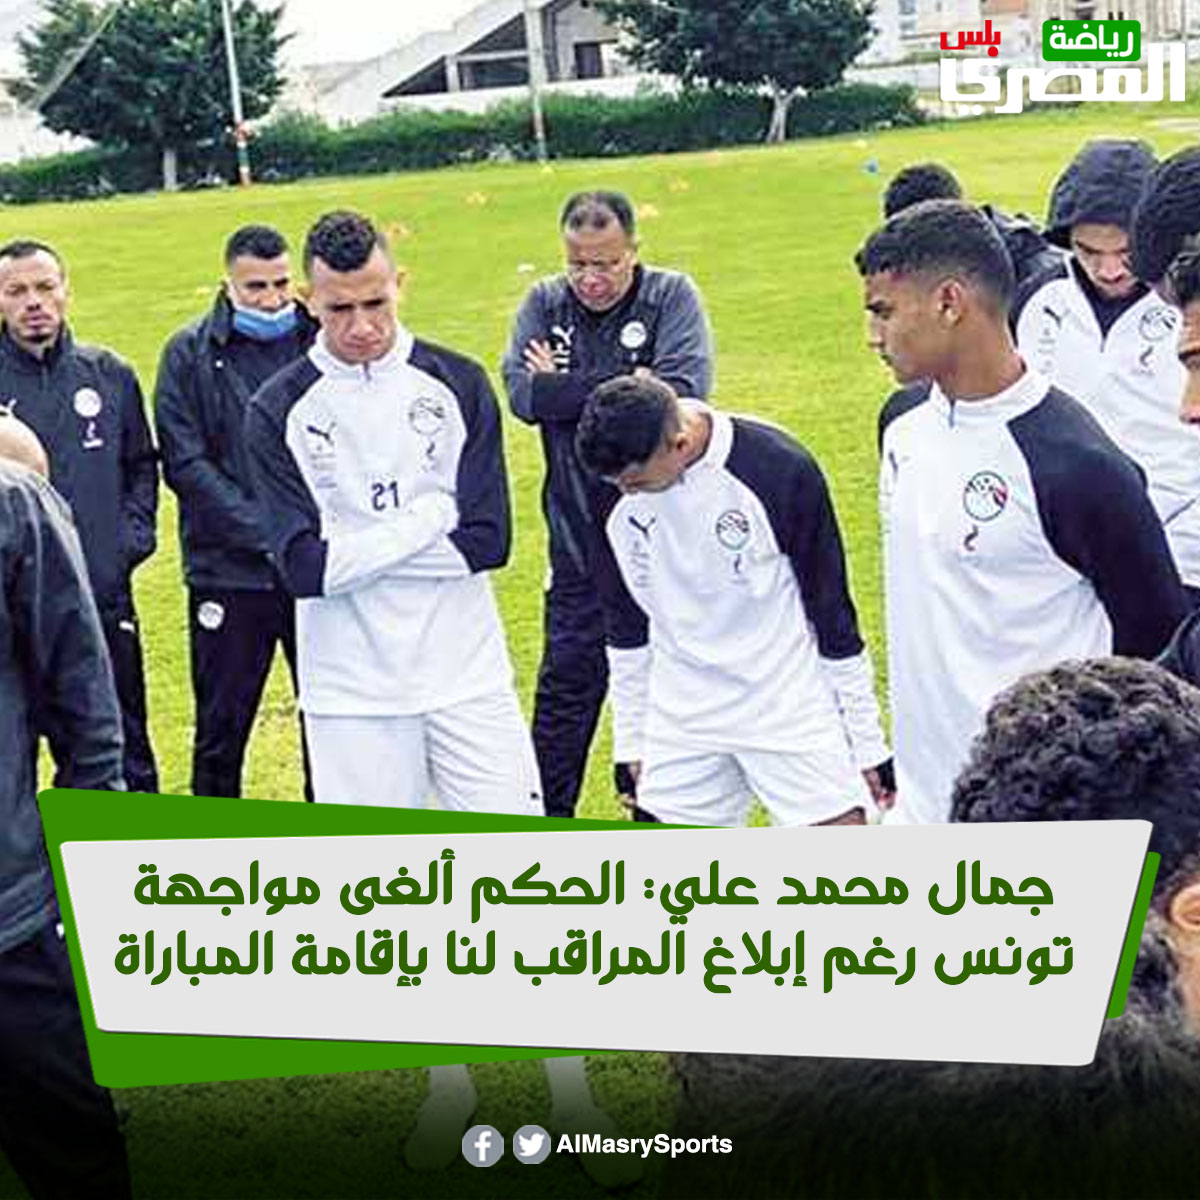 جمال محمد علي الحكم ألغى مواجهة تونس رغم إبلاغ المراقب لنا بإقامة المباراة